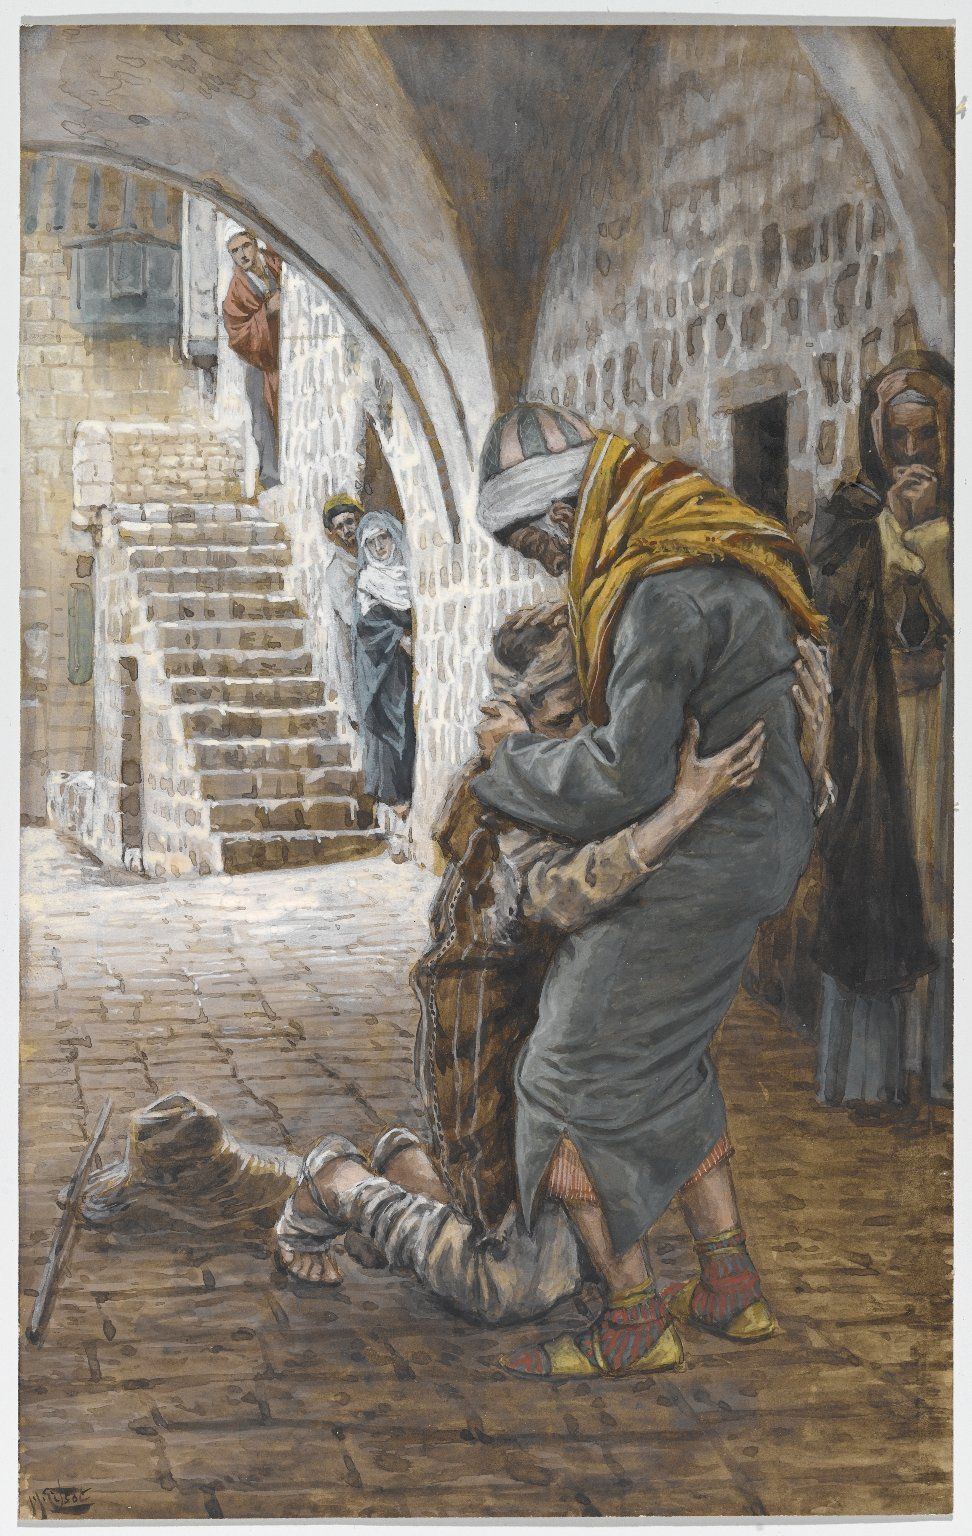 The Return of the Prodigal Son (Le retour de l'enfant prodigue) (1886-1894, French) by James Tissot - Public Domain Catholic Painting